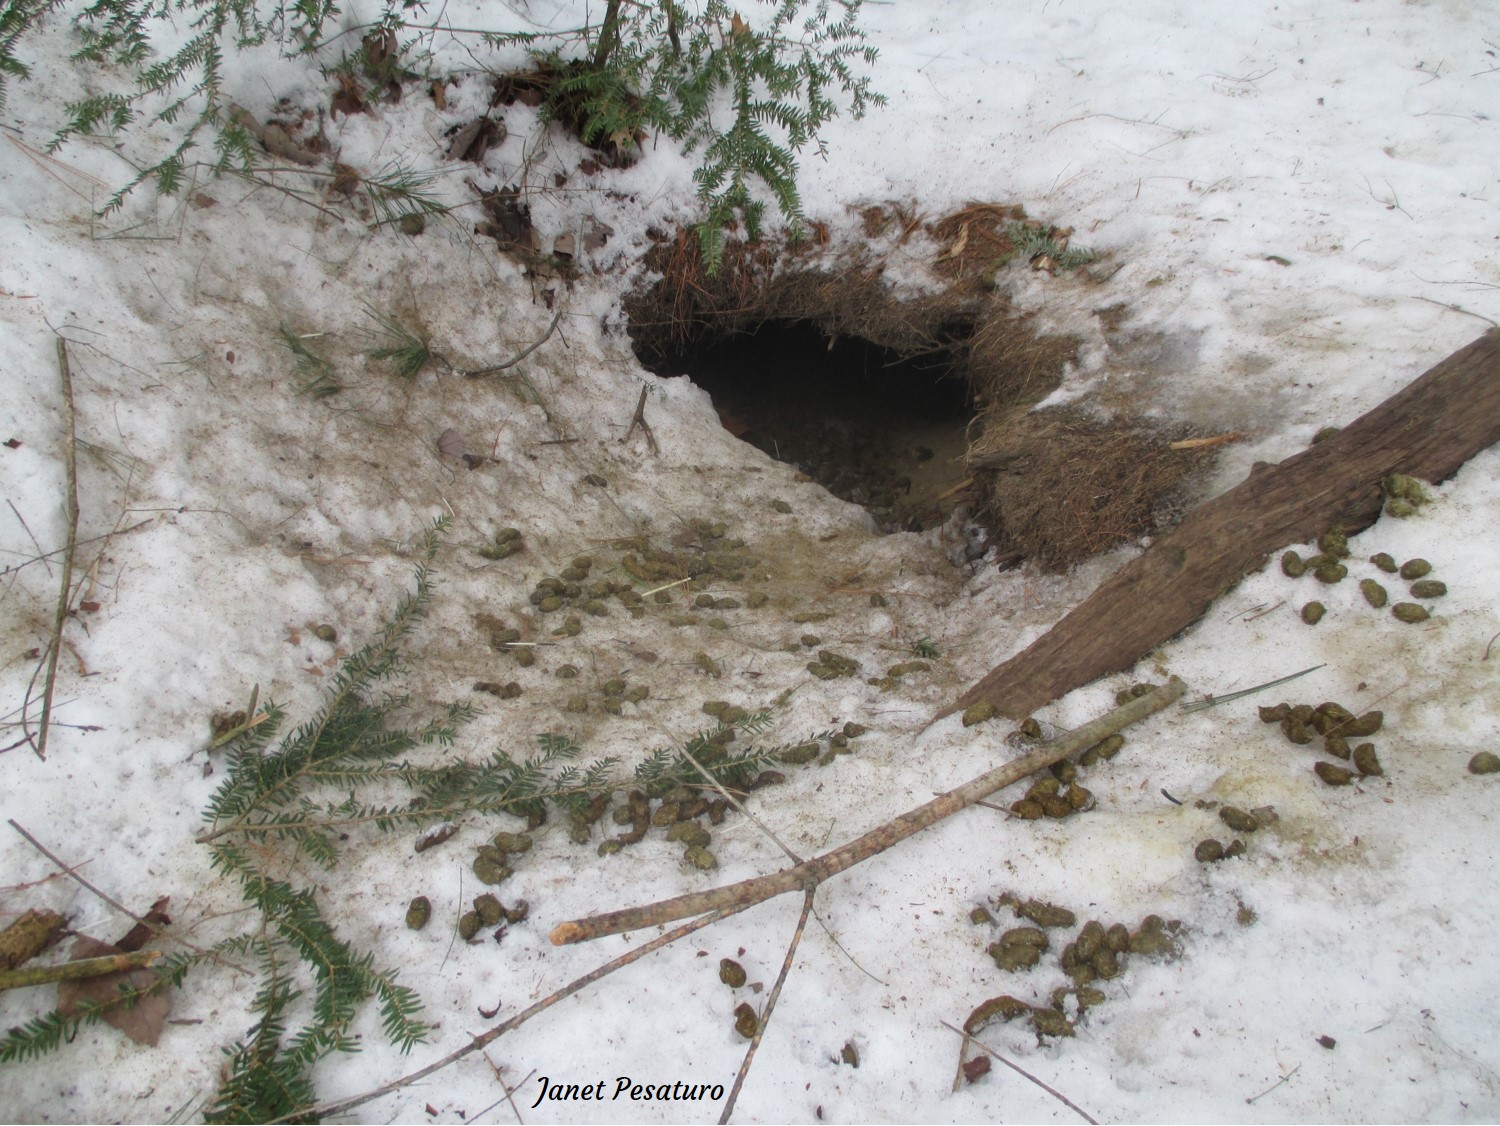 porcupine winter den in old beaver bank lodge